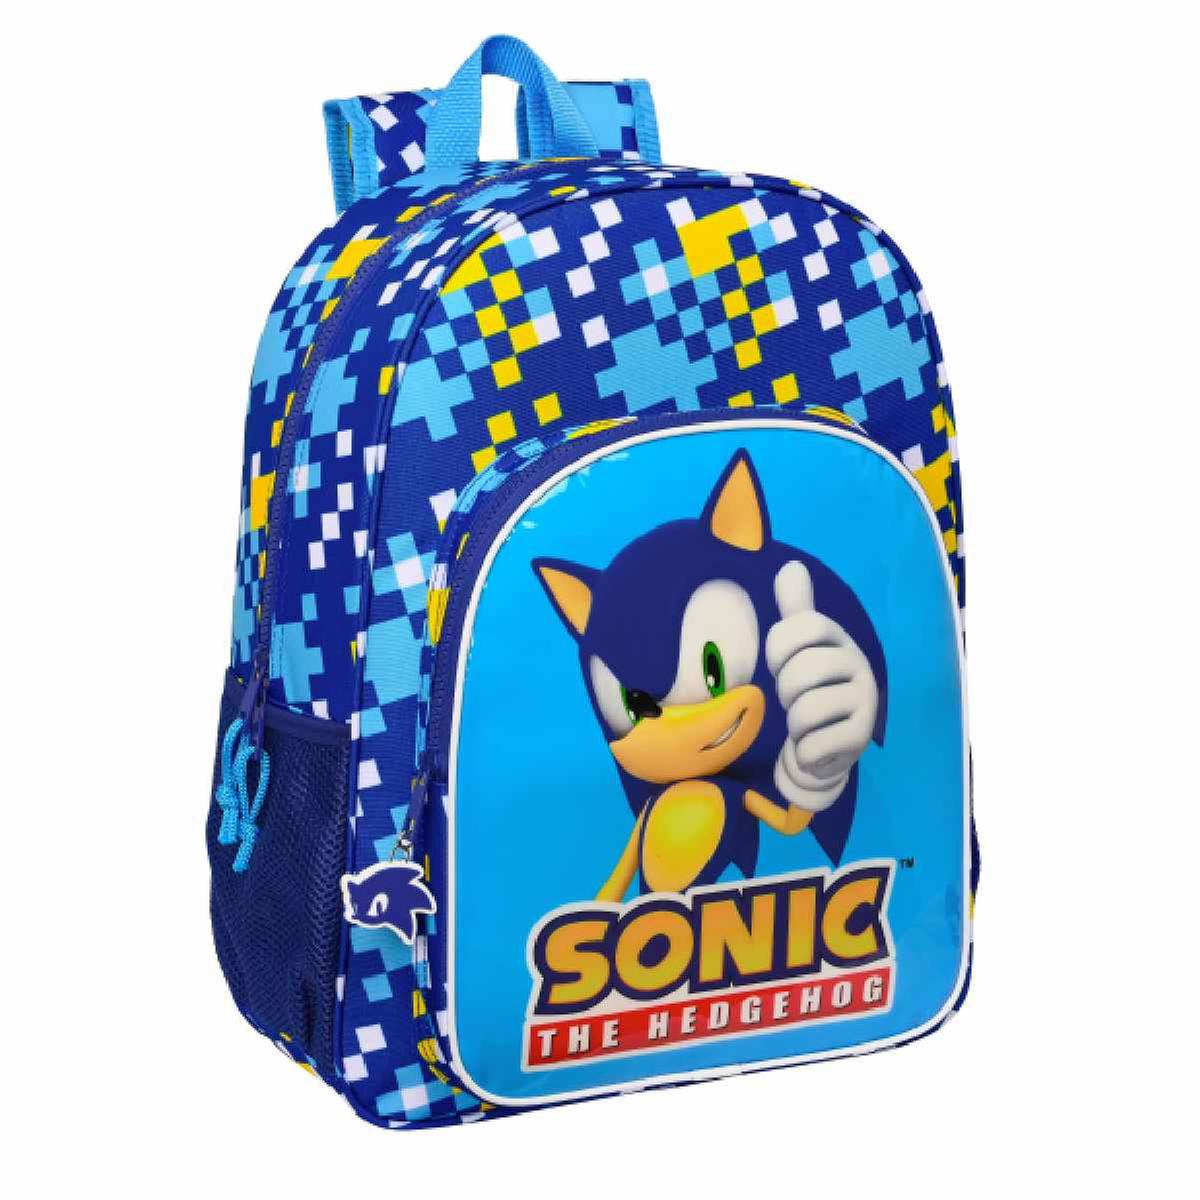 Sonic the hedgehog - Mochila 33 cm adaptável a trolley | Outras licenças |  Loja de brinquedos e videojogos Online Toysrus